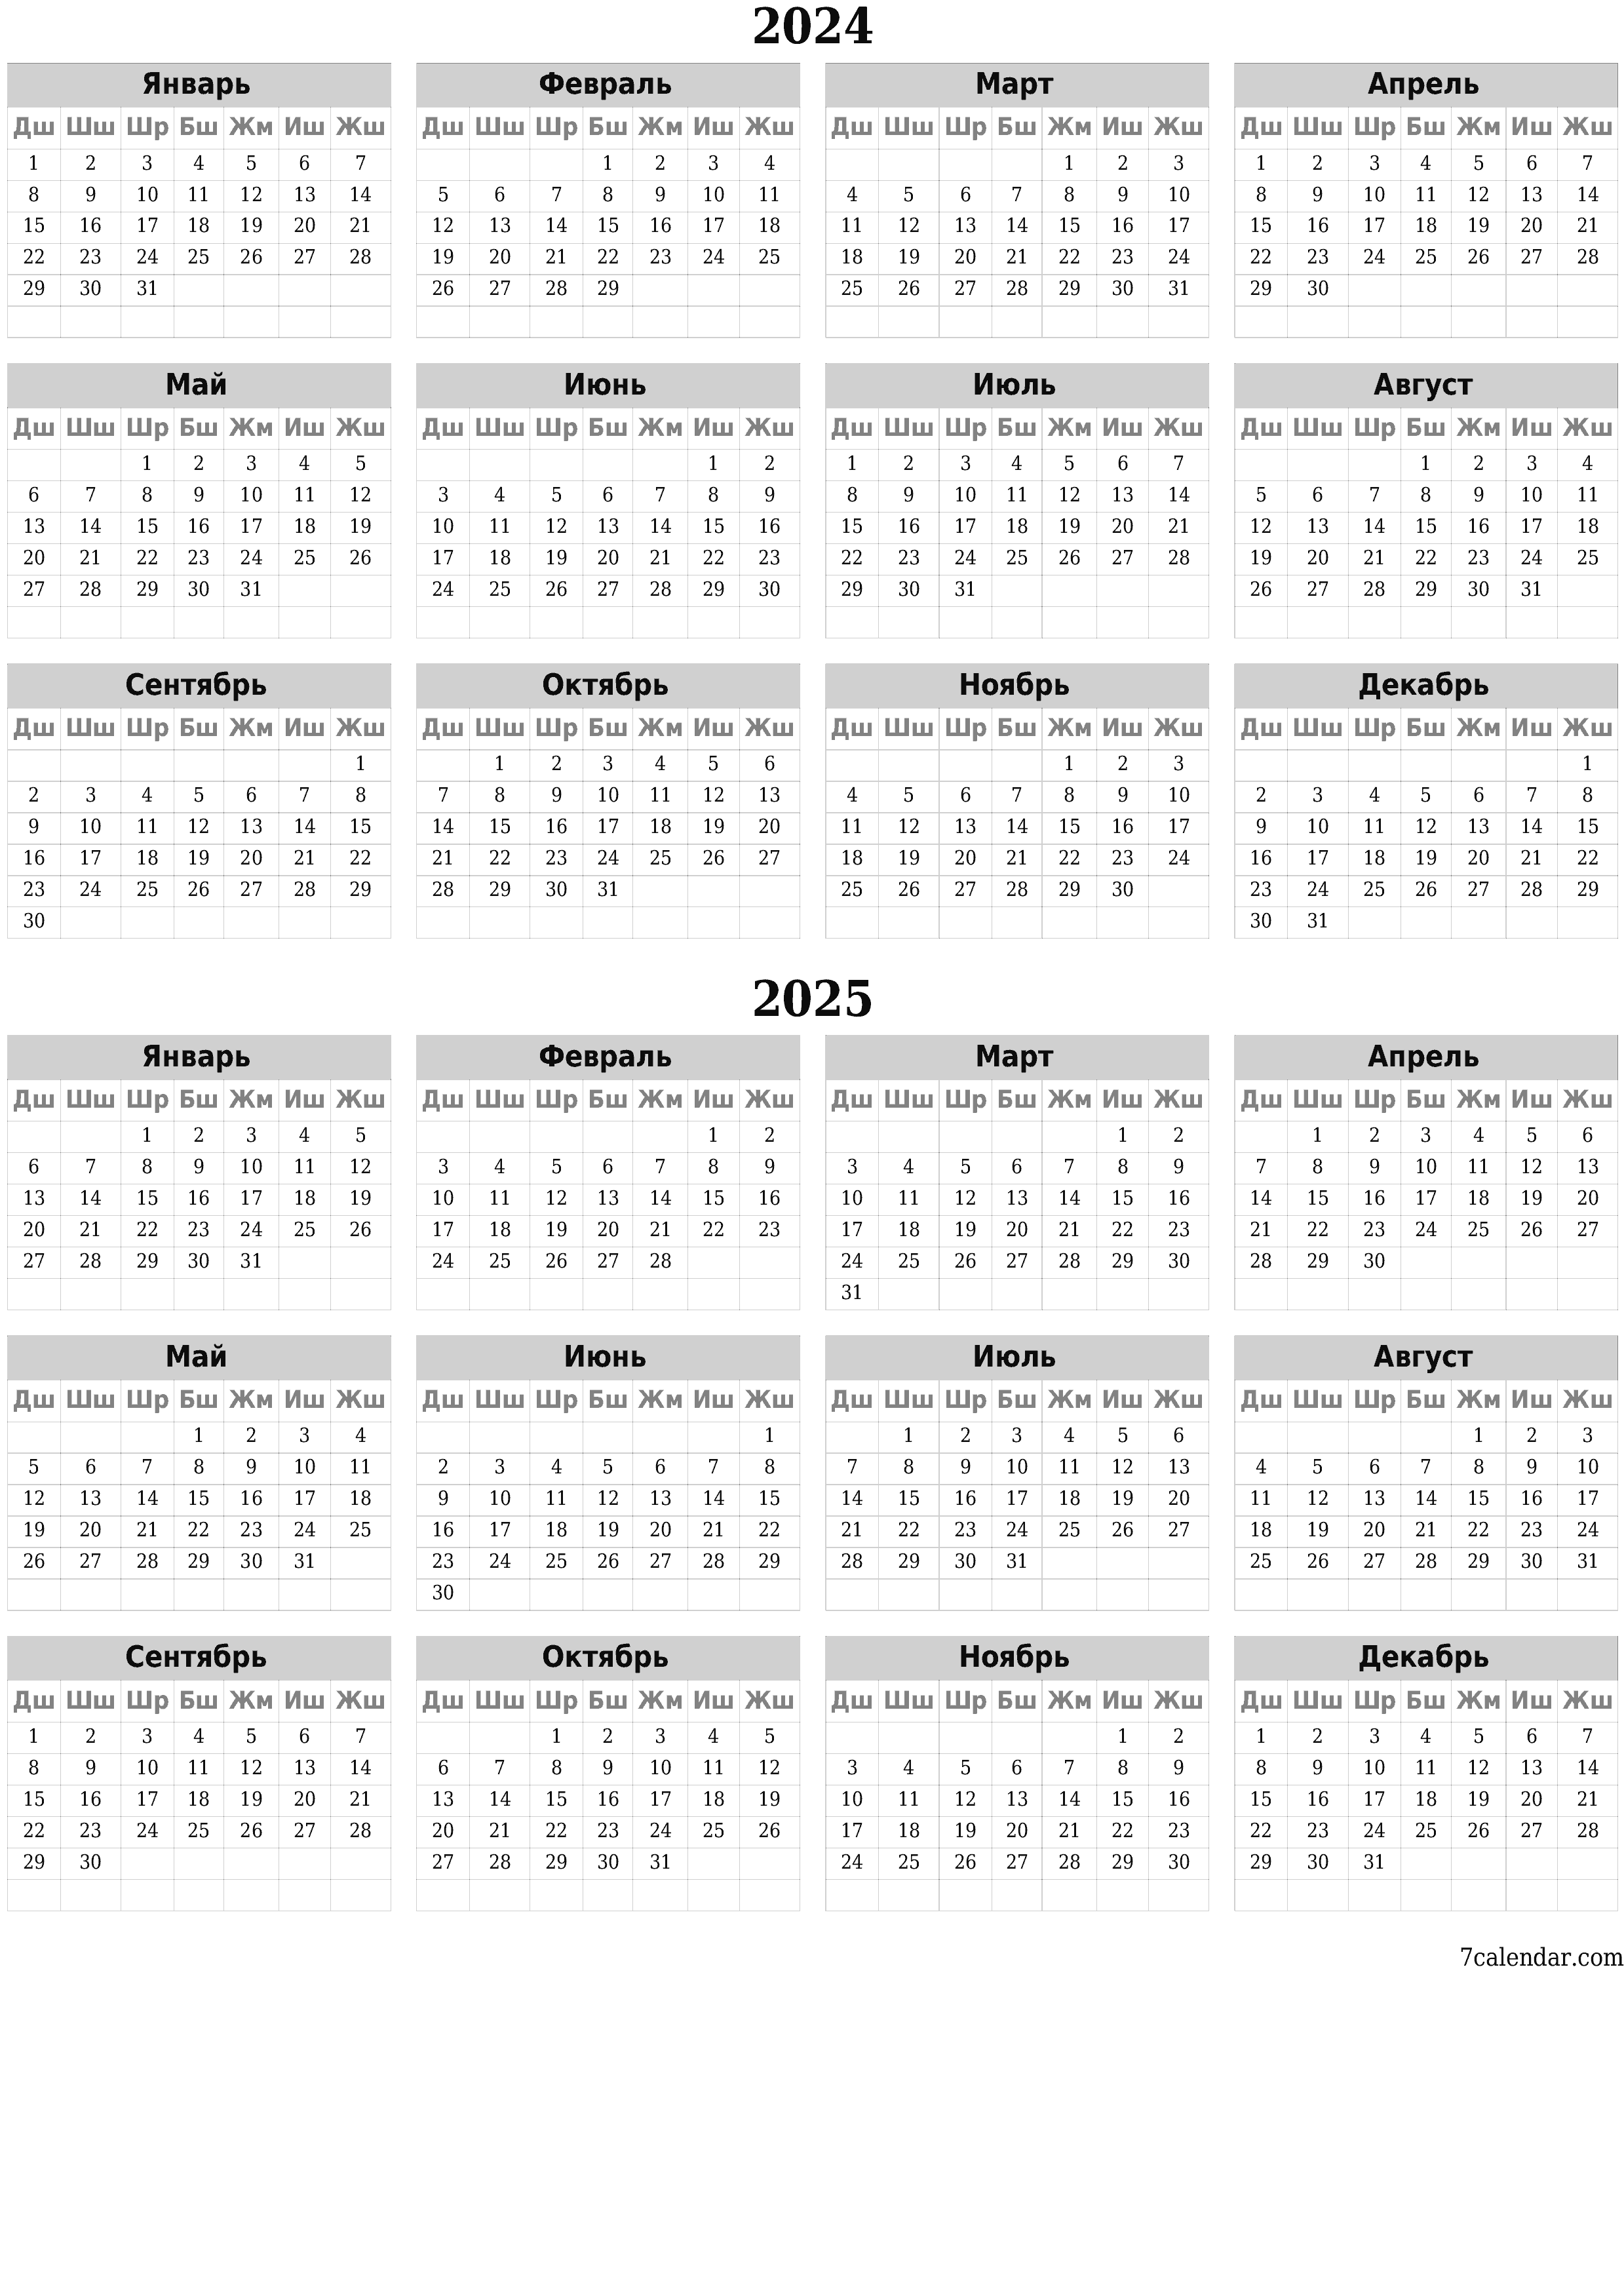 басма ь дубал ы шаблон акысыз ьвертикал Жыл сайын календар Бештин айы (Дек) 2024